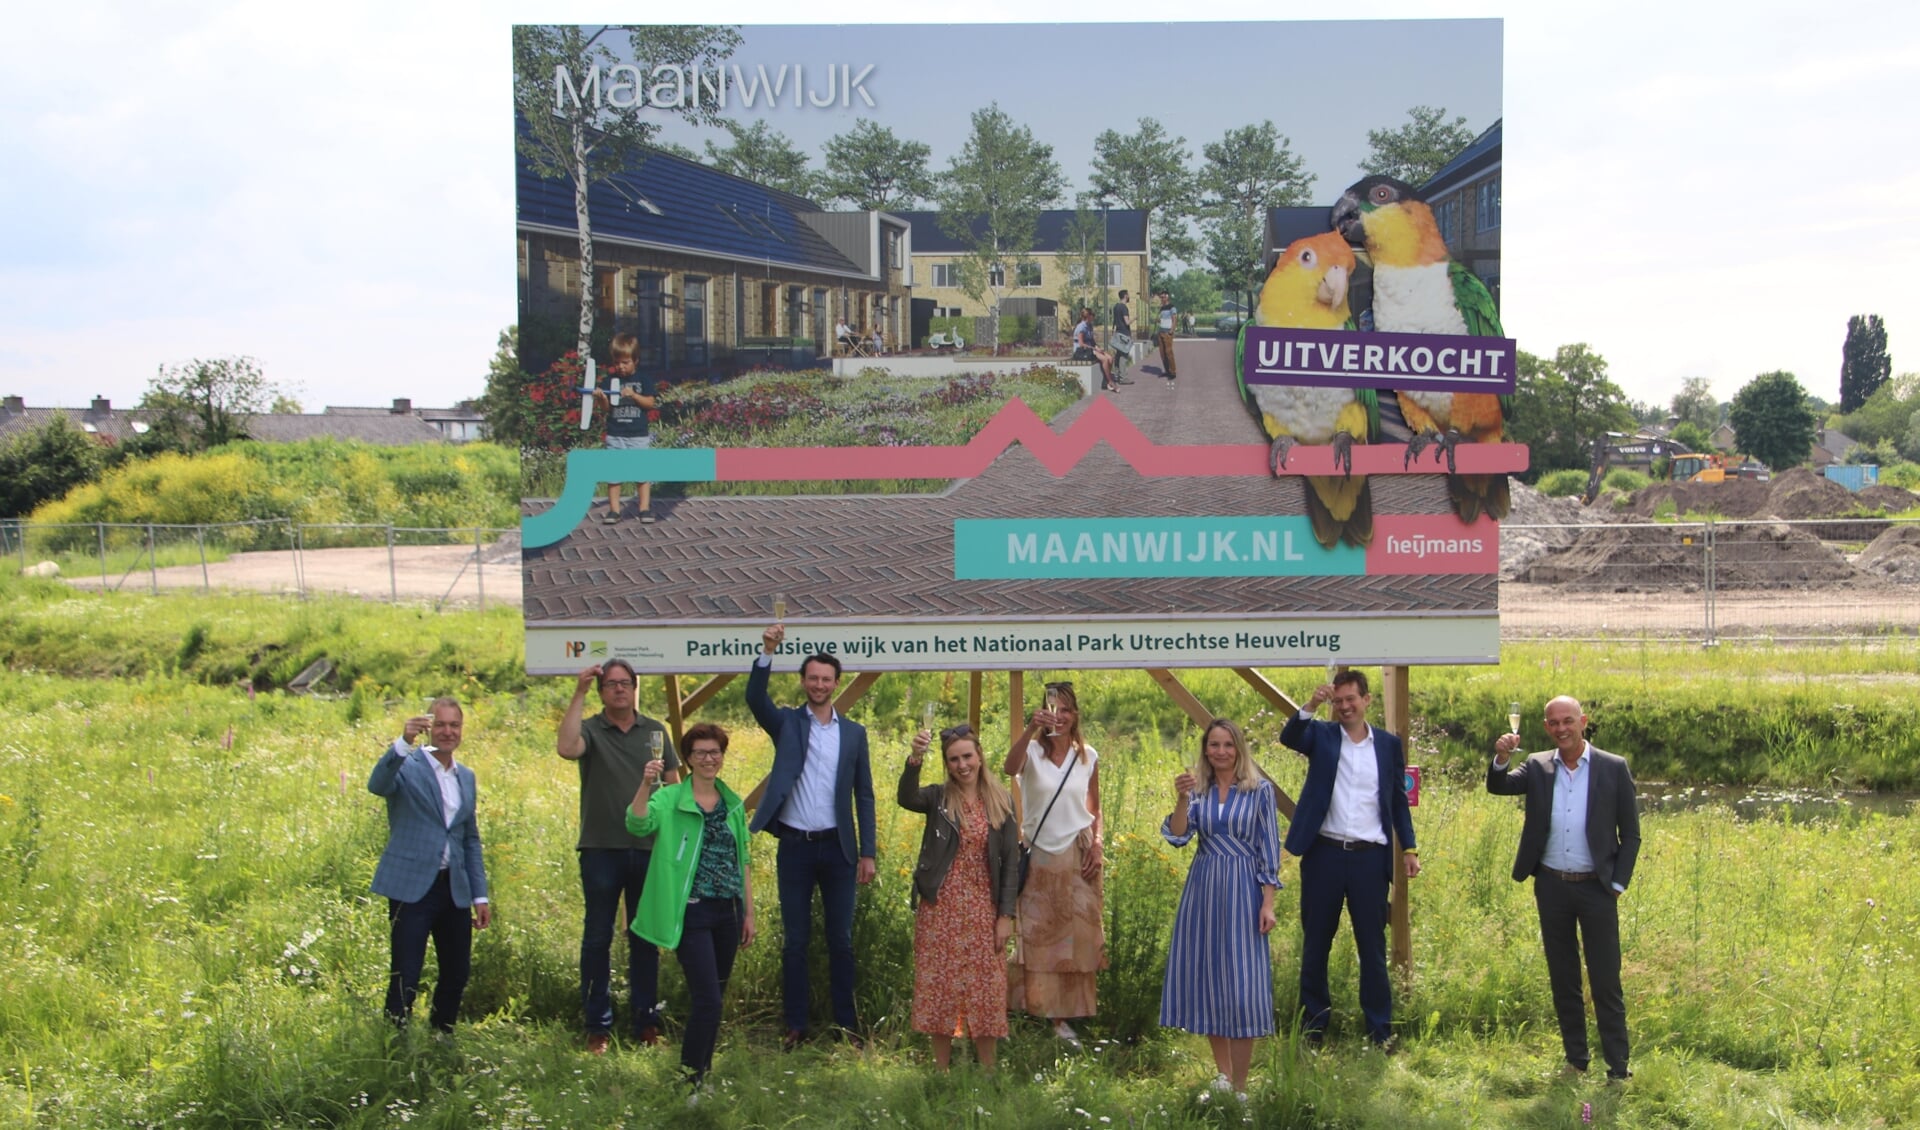 Regionale hoogwaardigheidsbekleders toasten op de nieuwe status van 'Maanwijk'.